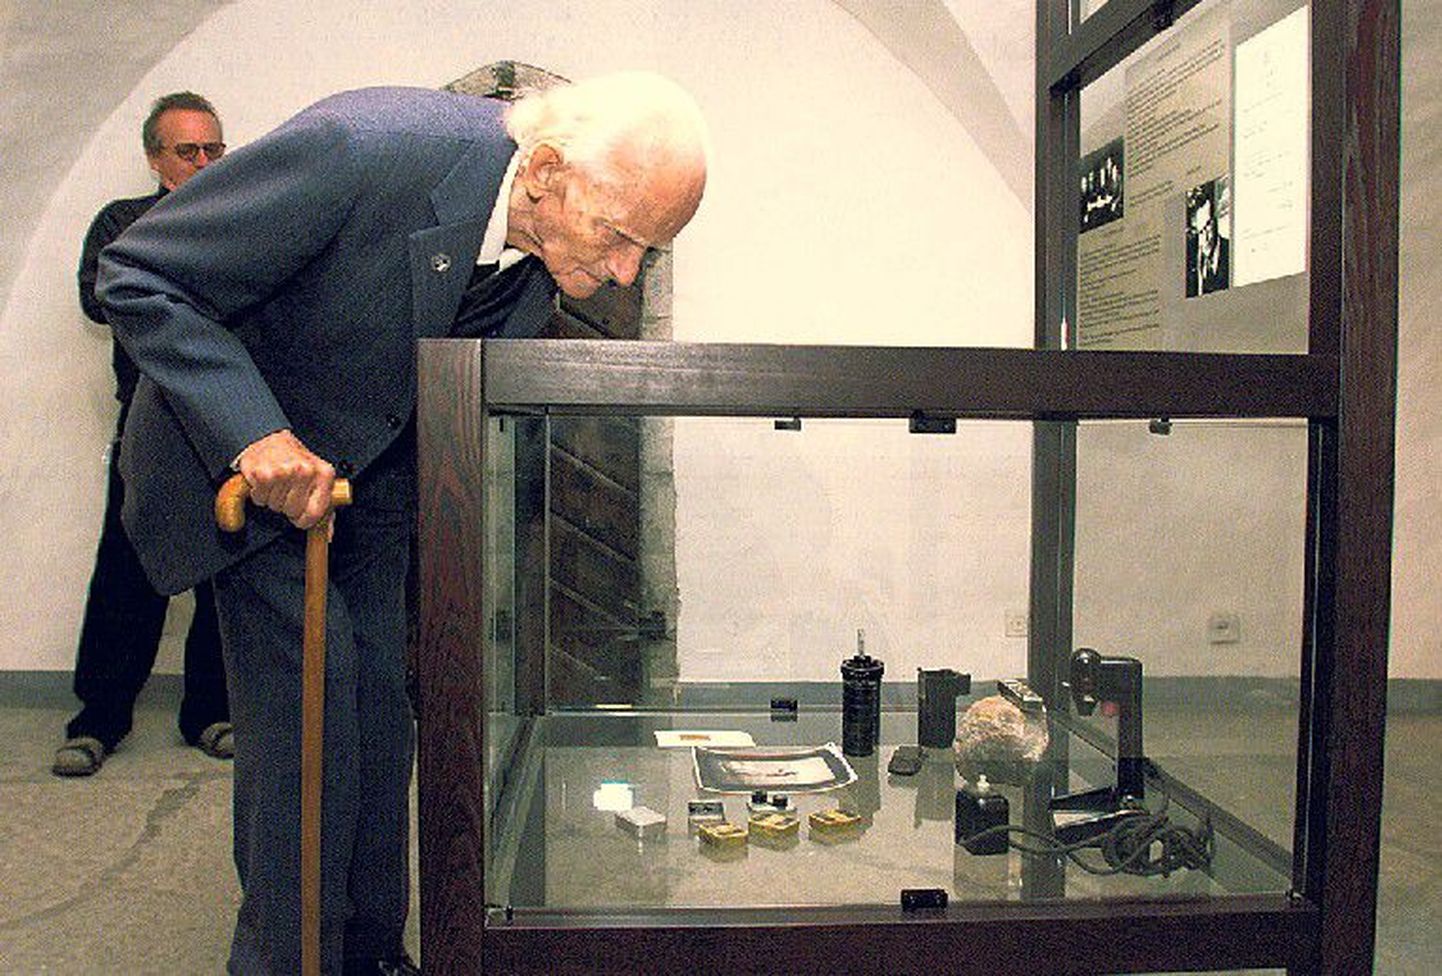 Pisikaamera looja: 
Minoxi fotoaparaadi leiutanud Walter Zapp käis 2000. aastal Eestis ja külastas ka Tallinna Raemuuseumi, kus säilitatakse tema esimest kaamerat ning selle loomislooga seotut. Zapp suri 2003. aastal.